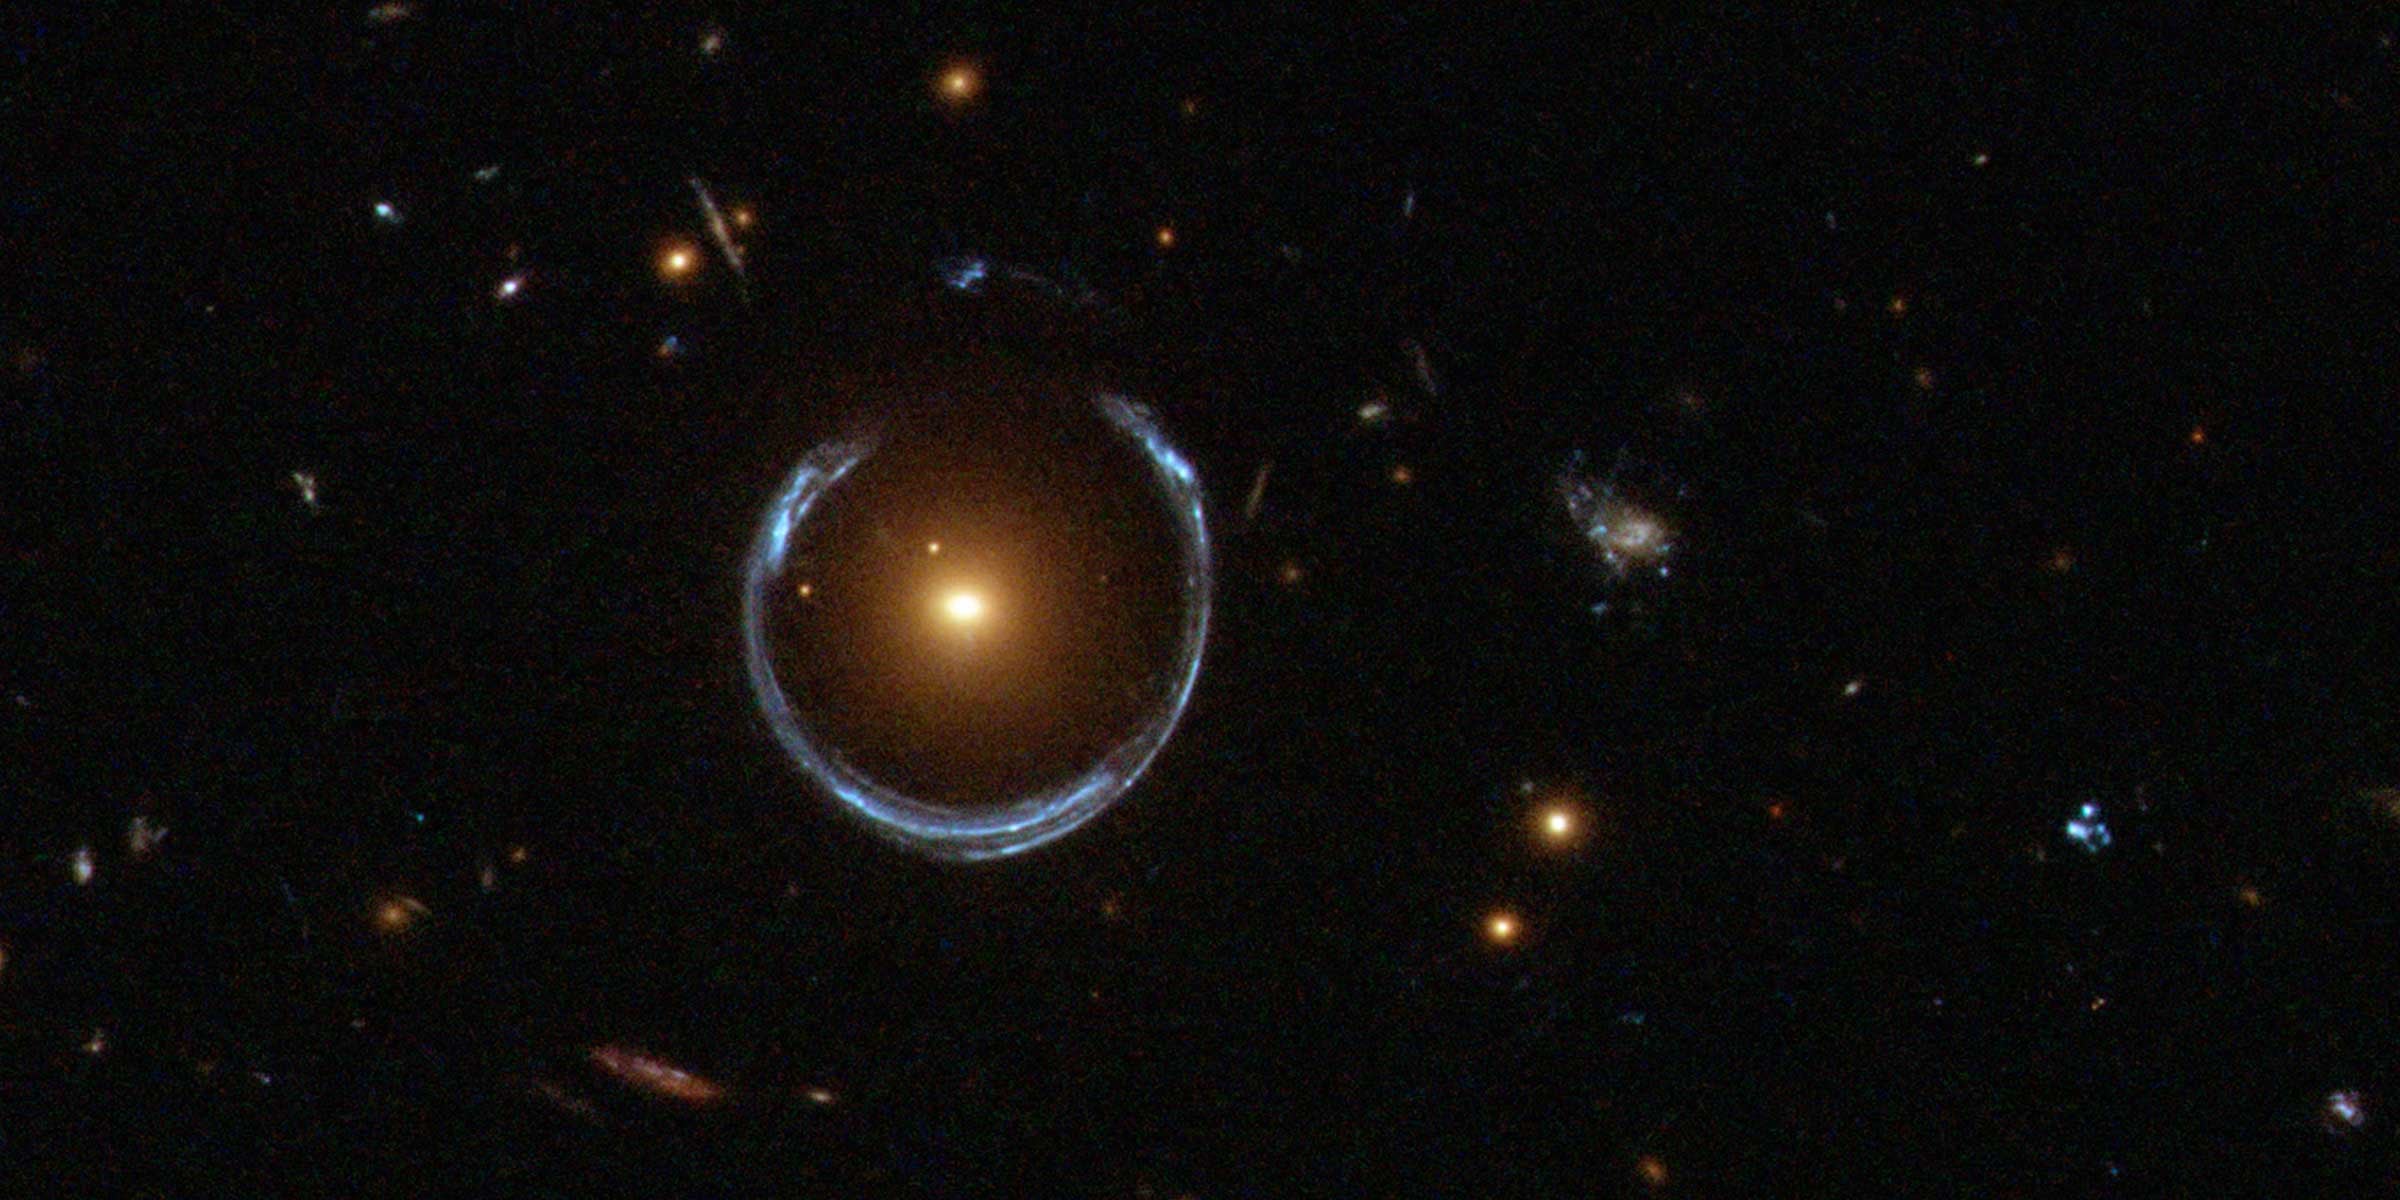 تحيط حلقة أينشتاين بمجرة حمراء مضيئة ، وهو مثال صارخ على عدسة الجاذبية.